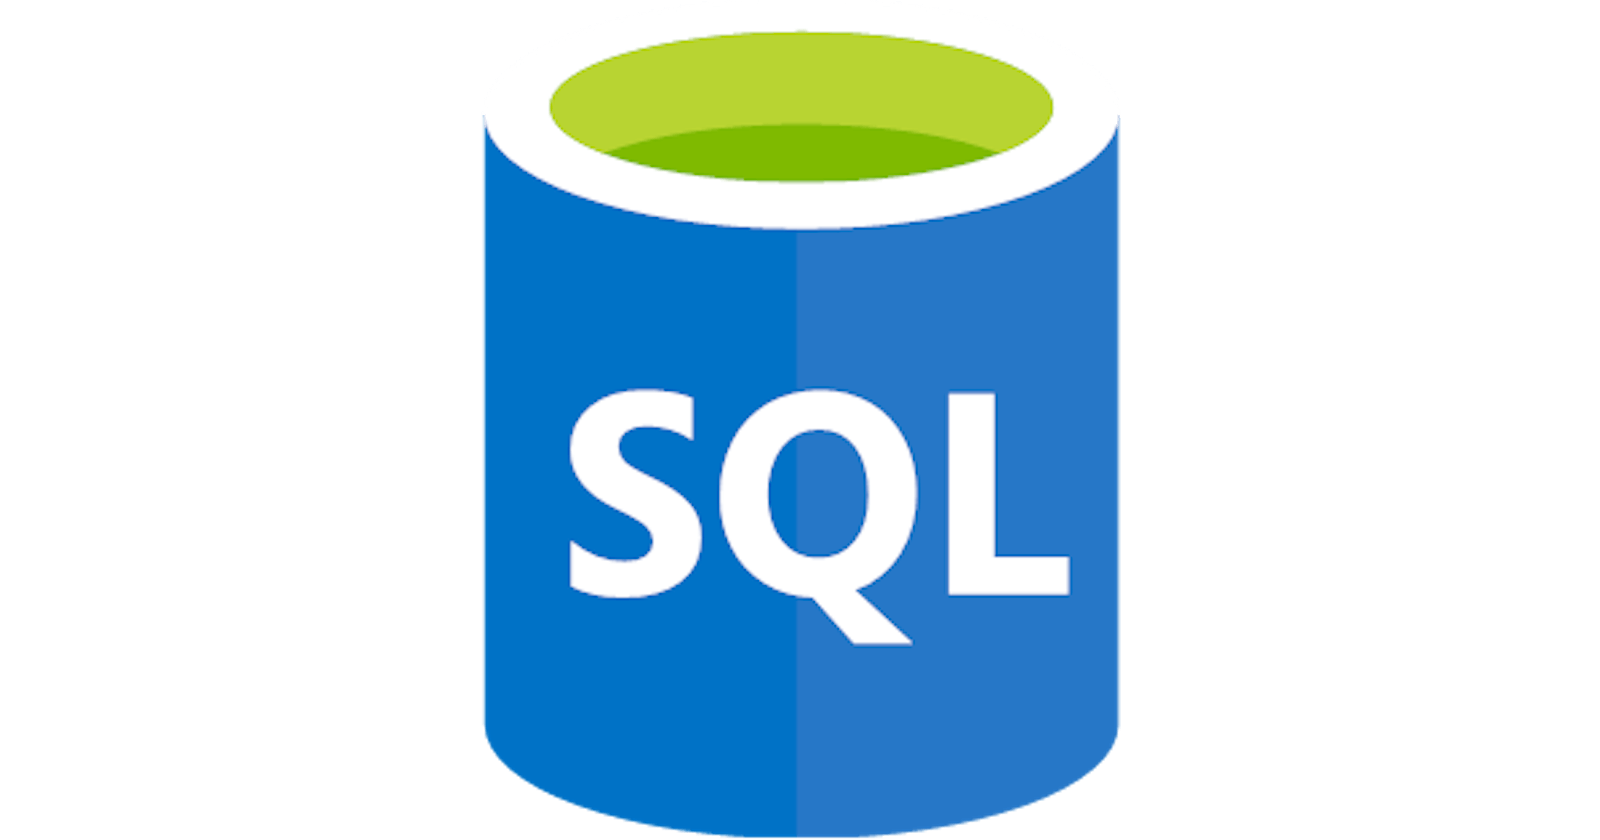 SELECT * in SQL